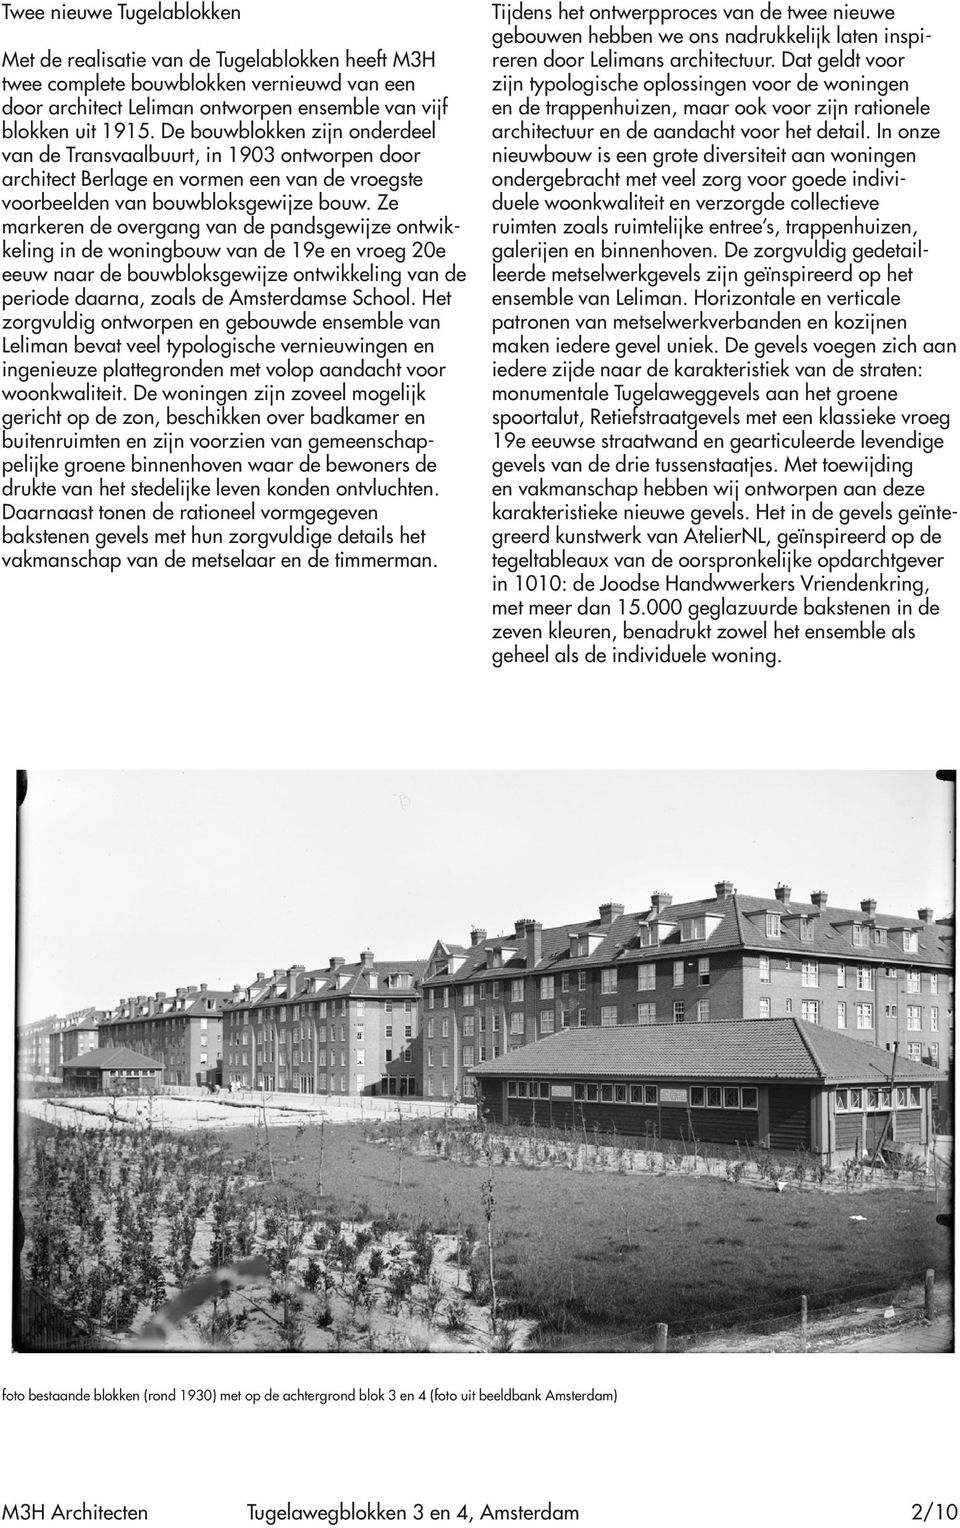 Ze markeren de overgang van de pandsgewijze ontwikkeling in de woningbouw van de 19e en vroeg 20e eeuw naar de bouwbloksgewijze ontwikkeling van de periode daarna, zoals de Amsterdamse School.